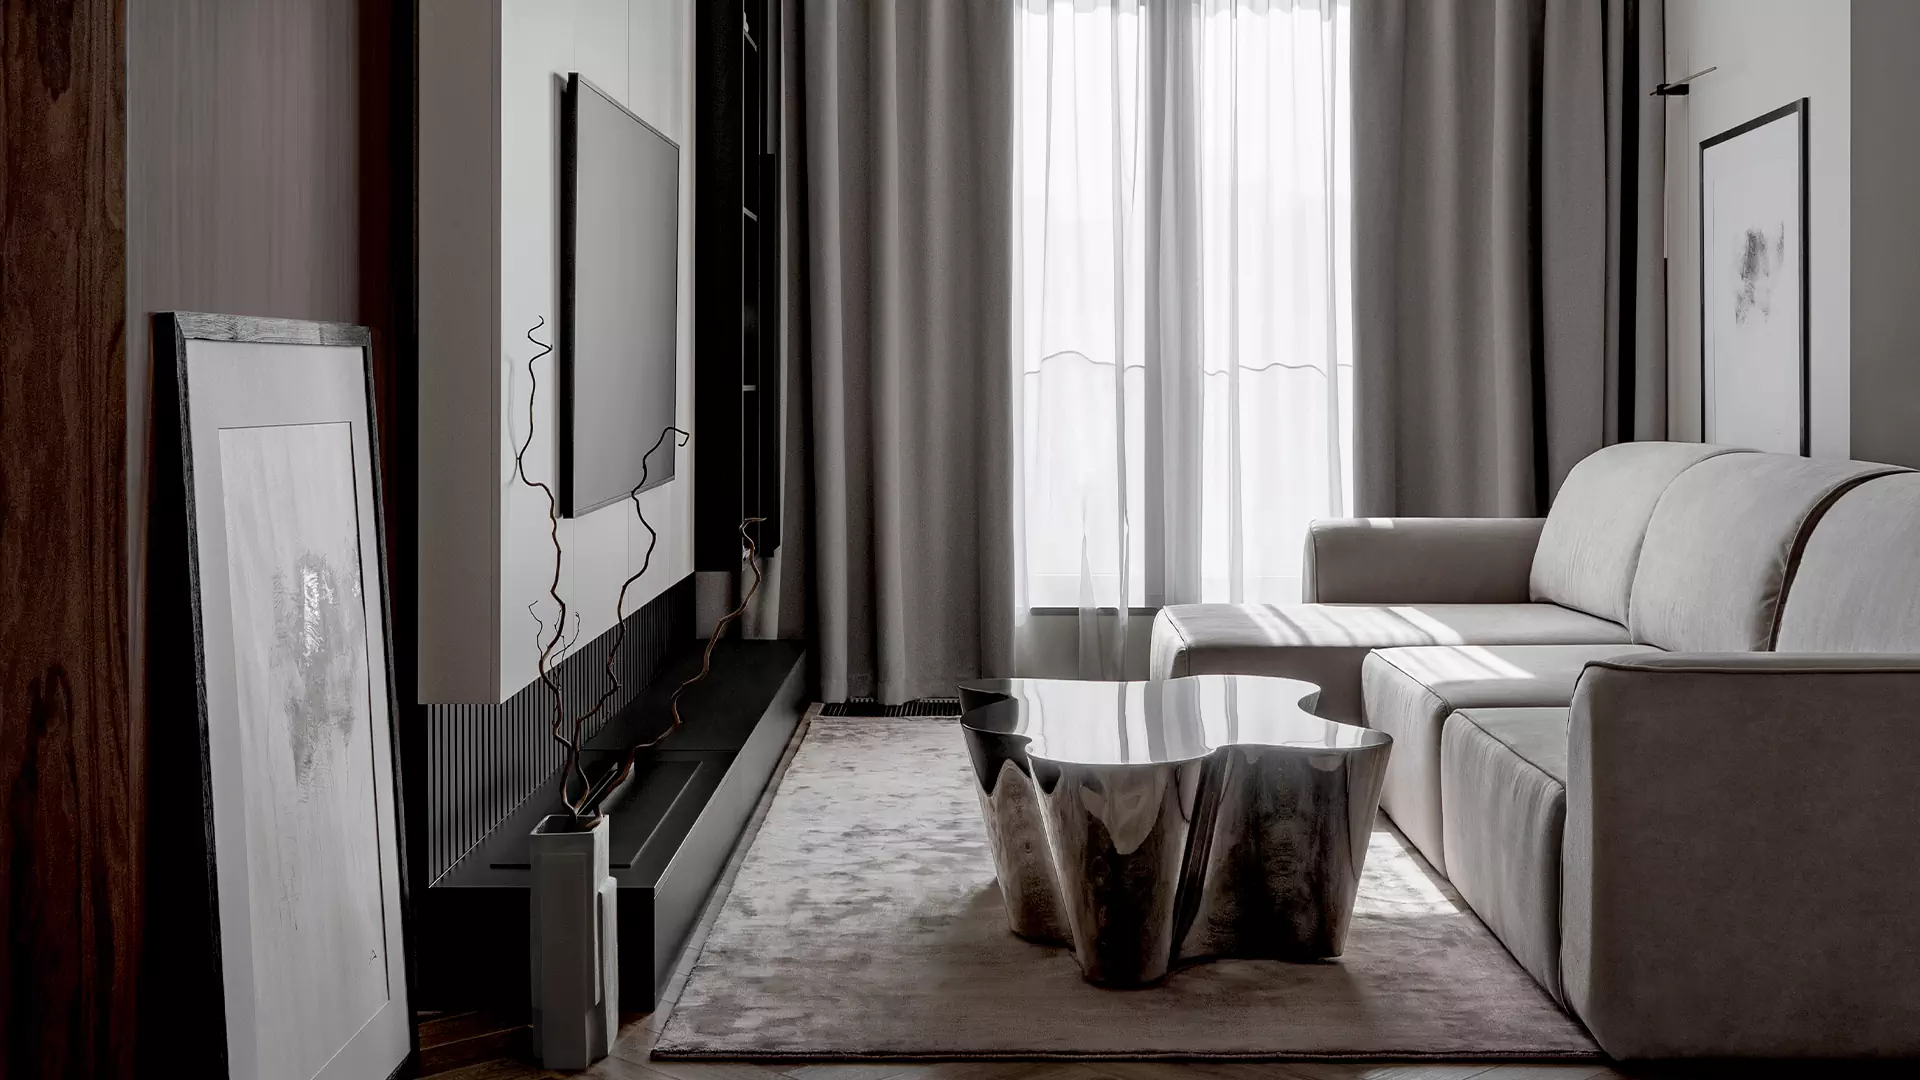 Монохромный интерьер квартиры с эффектным камином в гостиной — проект Яны Родзевич